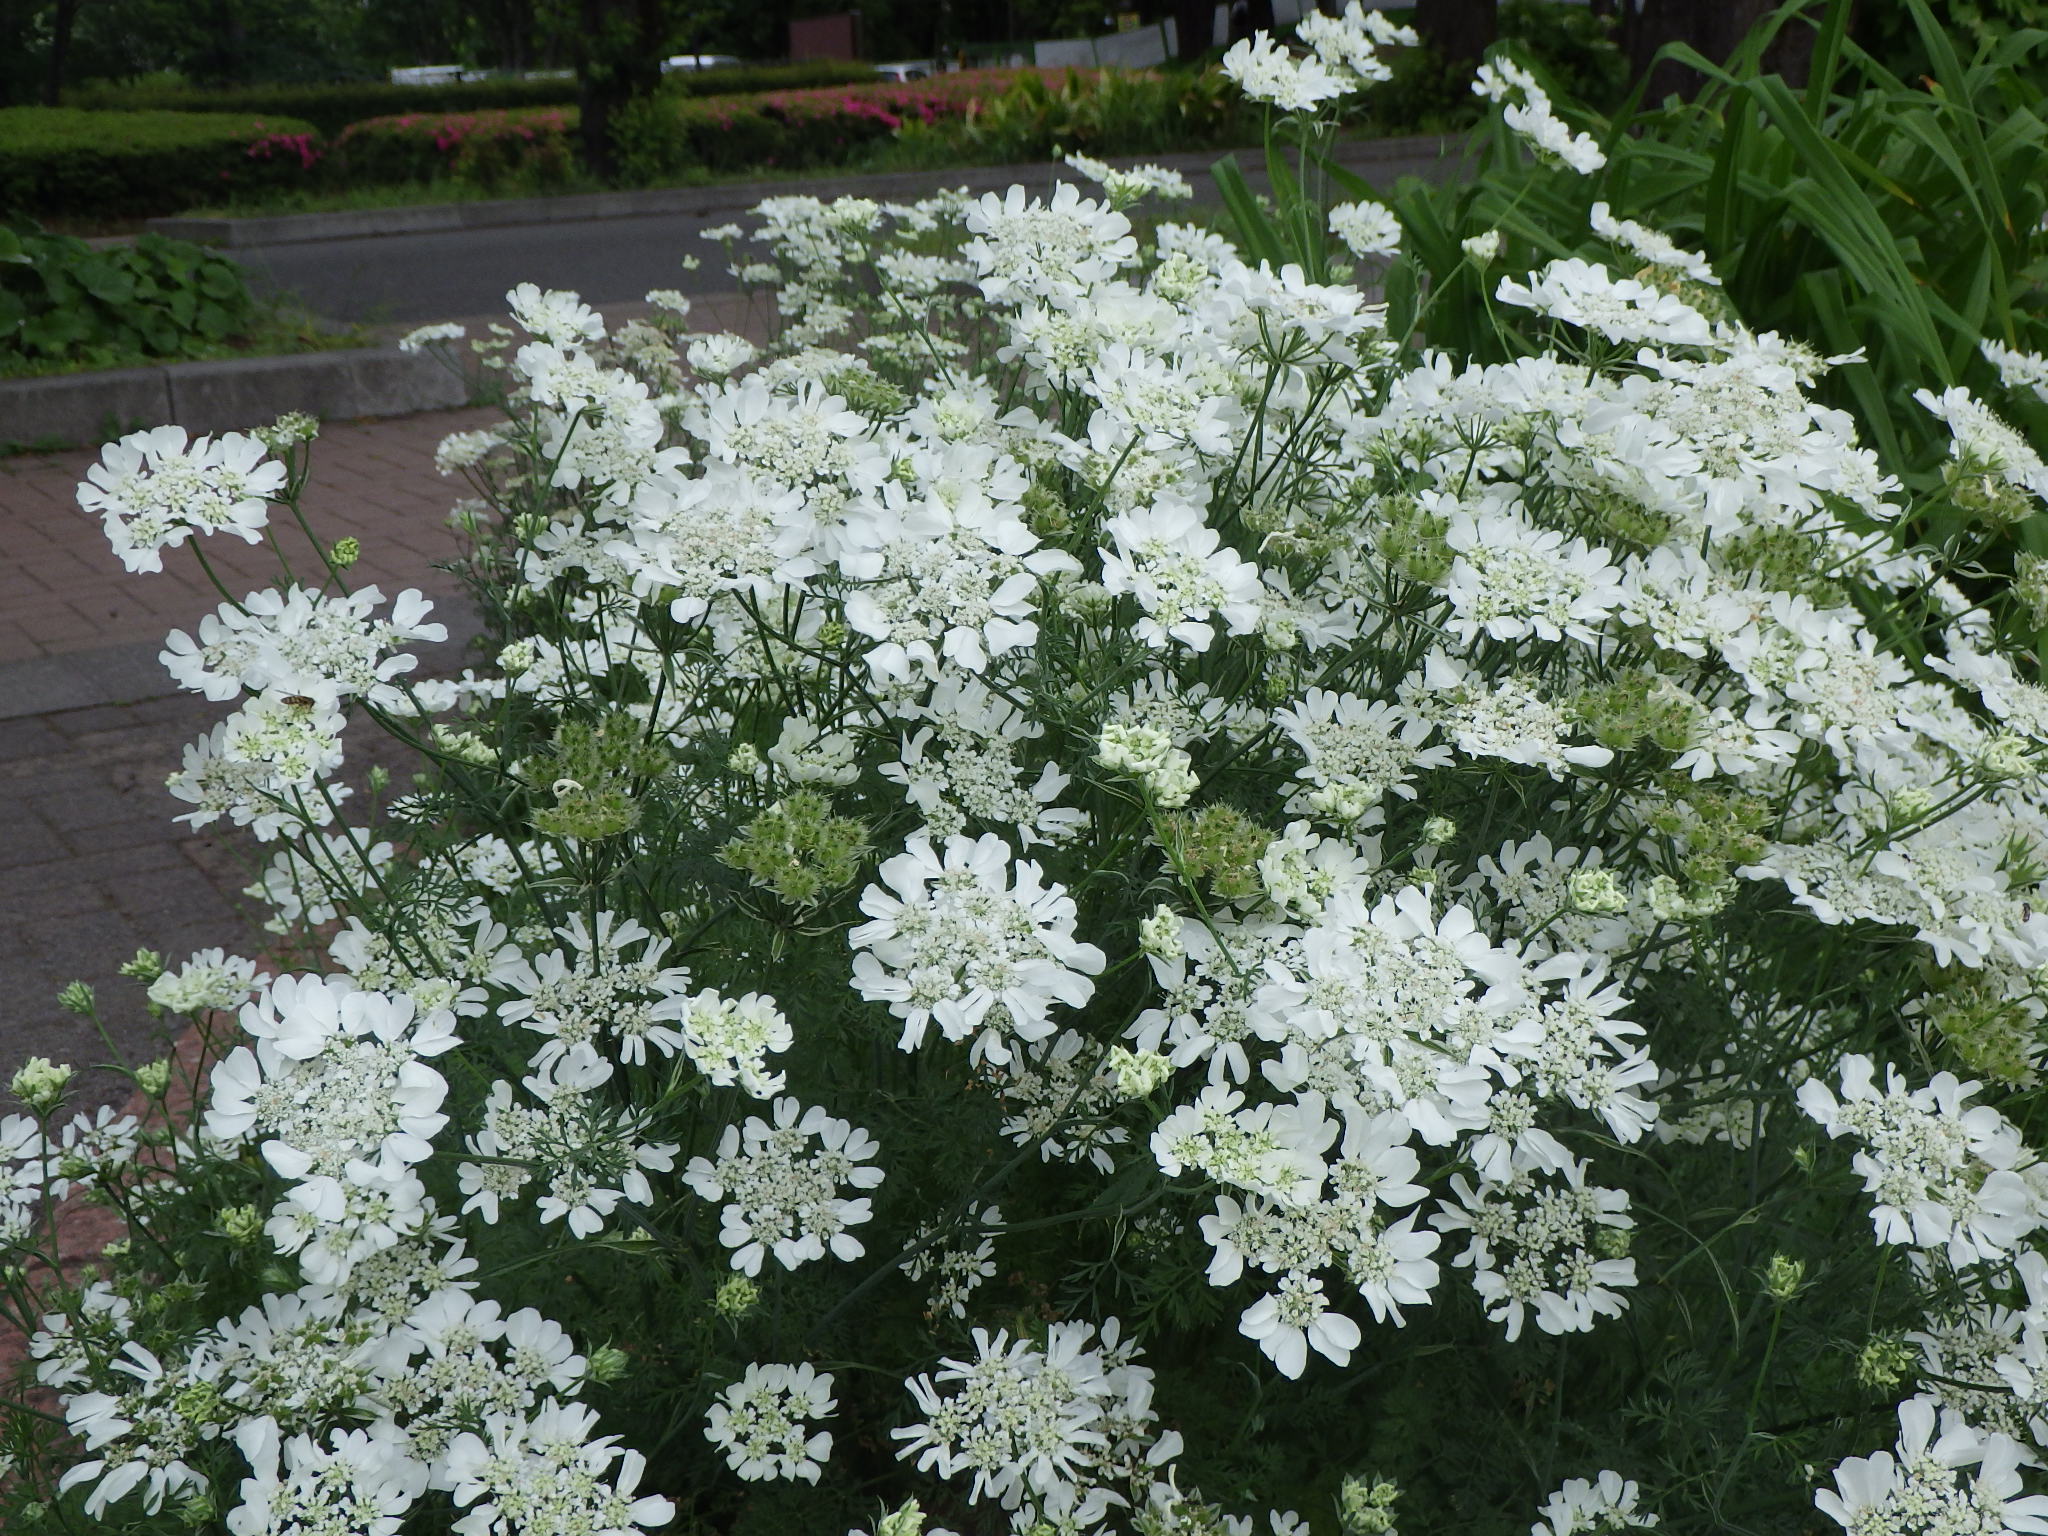 都立府中の森公園 公園のメインストリートに面した花壇に白くレースで編んだような繊細な花が咲いています オルレア です 清楚でナチュラルな雰囲気が魅力の花です 花言葉は ほのかな想い 散歩の足を止めてみてはいかがでしょう T Co